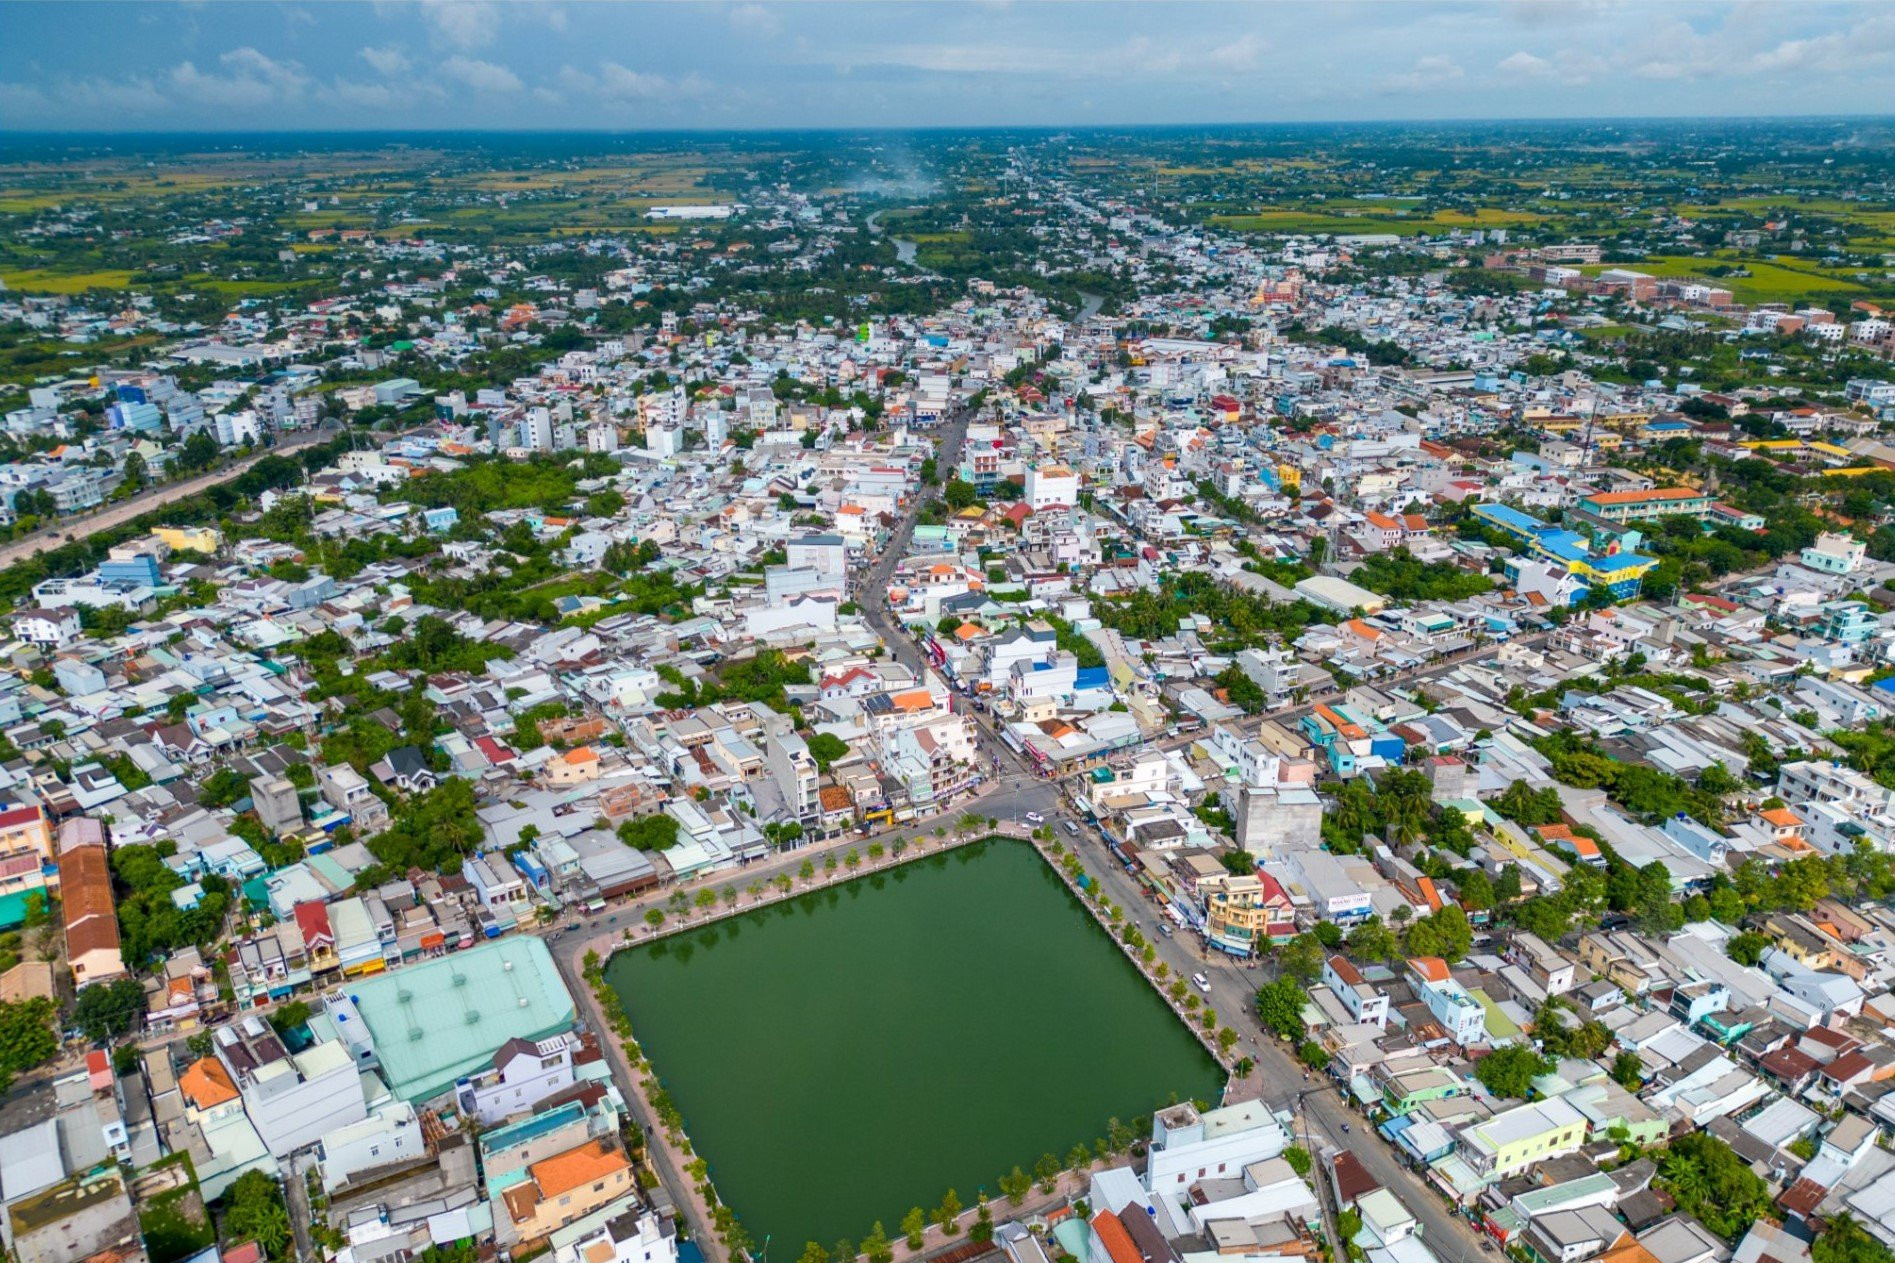 Thành phố Gò Công có 101,69km2 diện tích tự nhiên